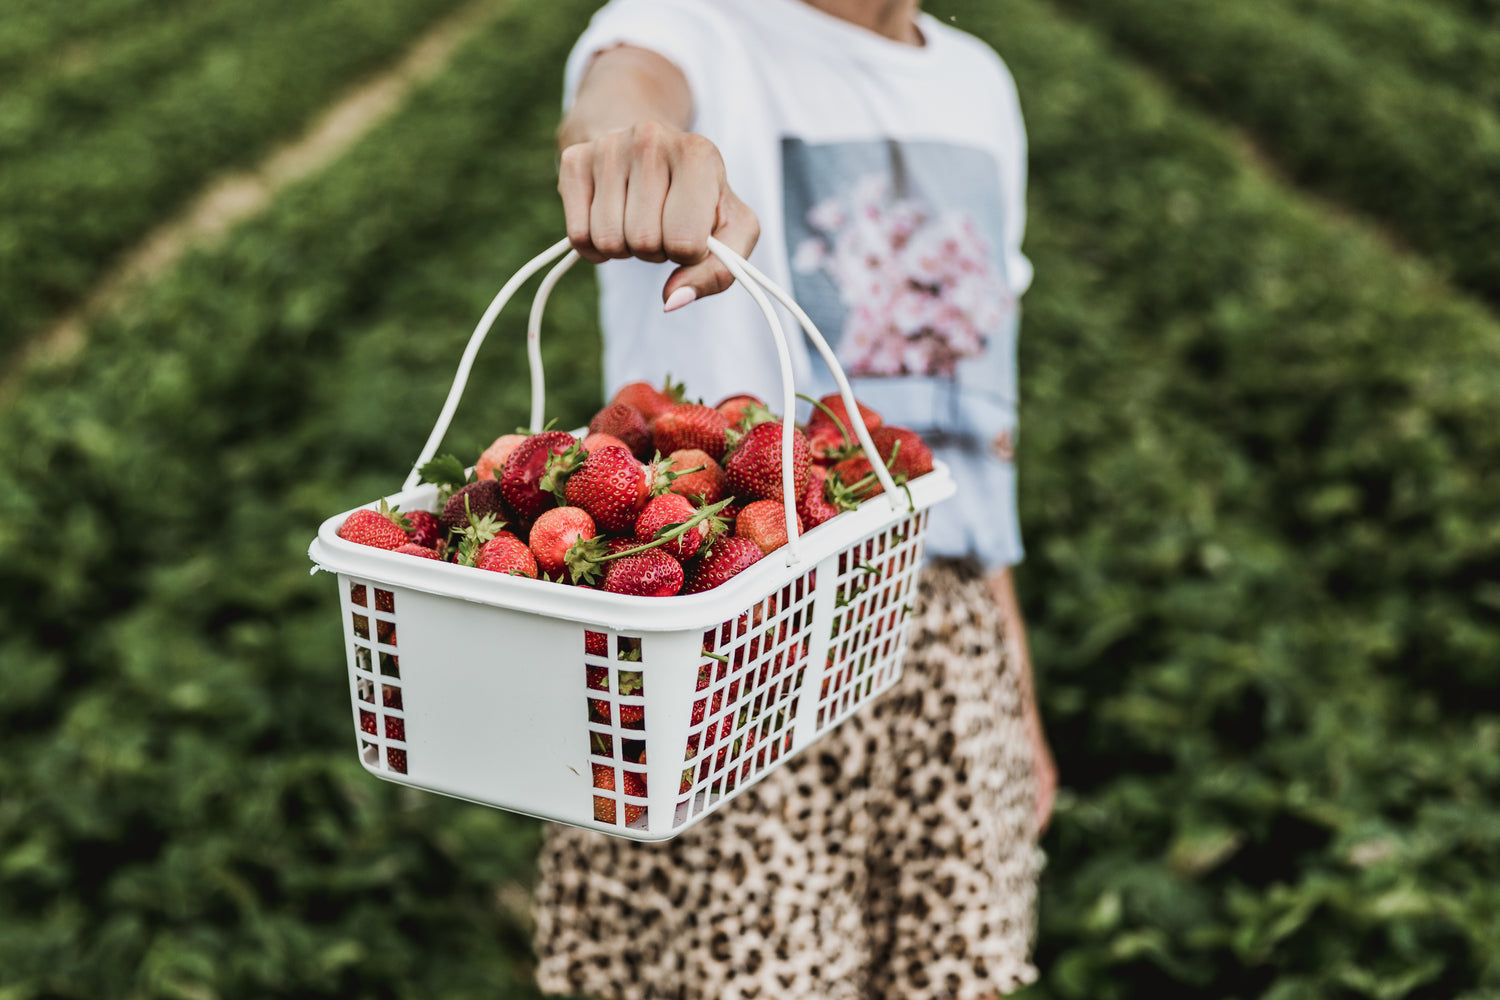 Hvilke bærsorter kan man selv plukke og dyrke i Danmark? De mest almindelig er jordbær, blåbær, hindbær, solbær, ribs og kirsebær, men der findes mange andre bærsorter.